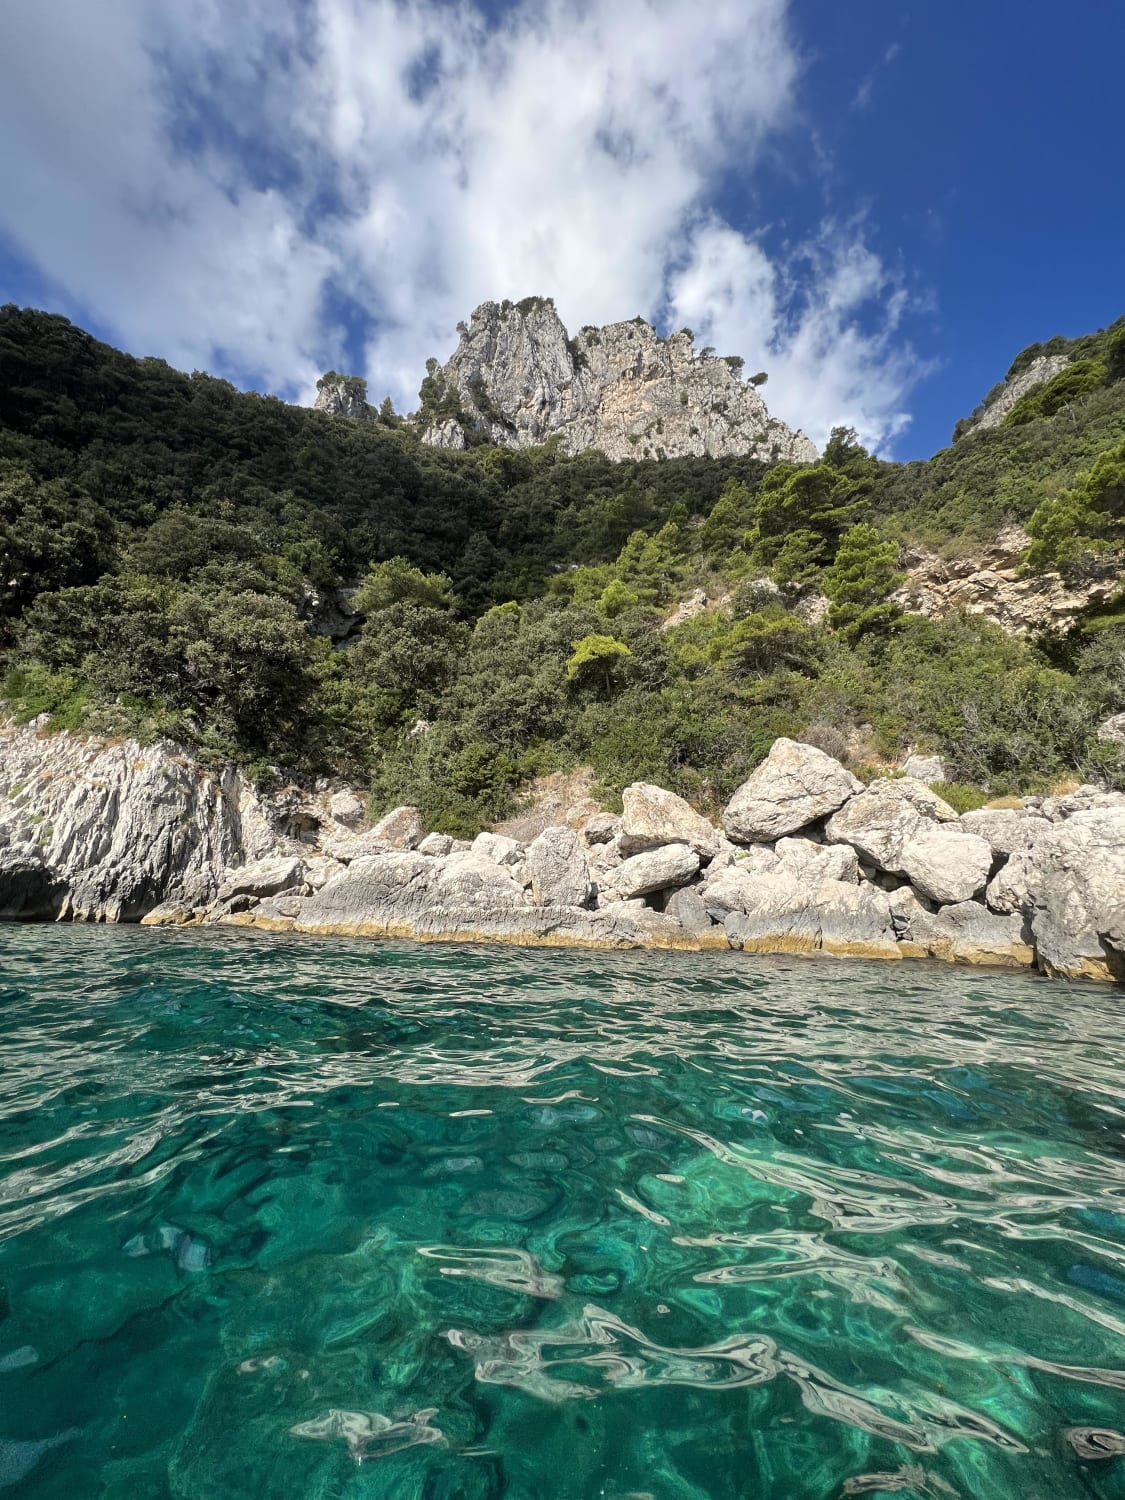 Capri, Italy! I had to share this photo. Capri is so beautiful!